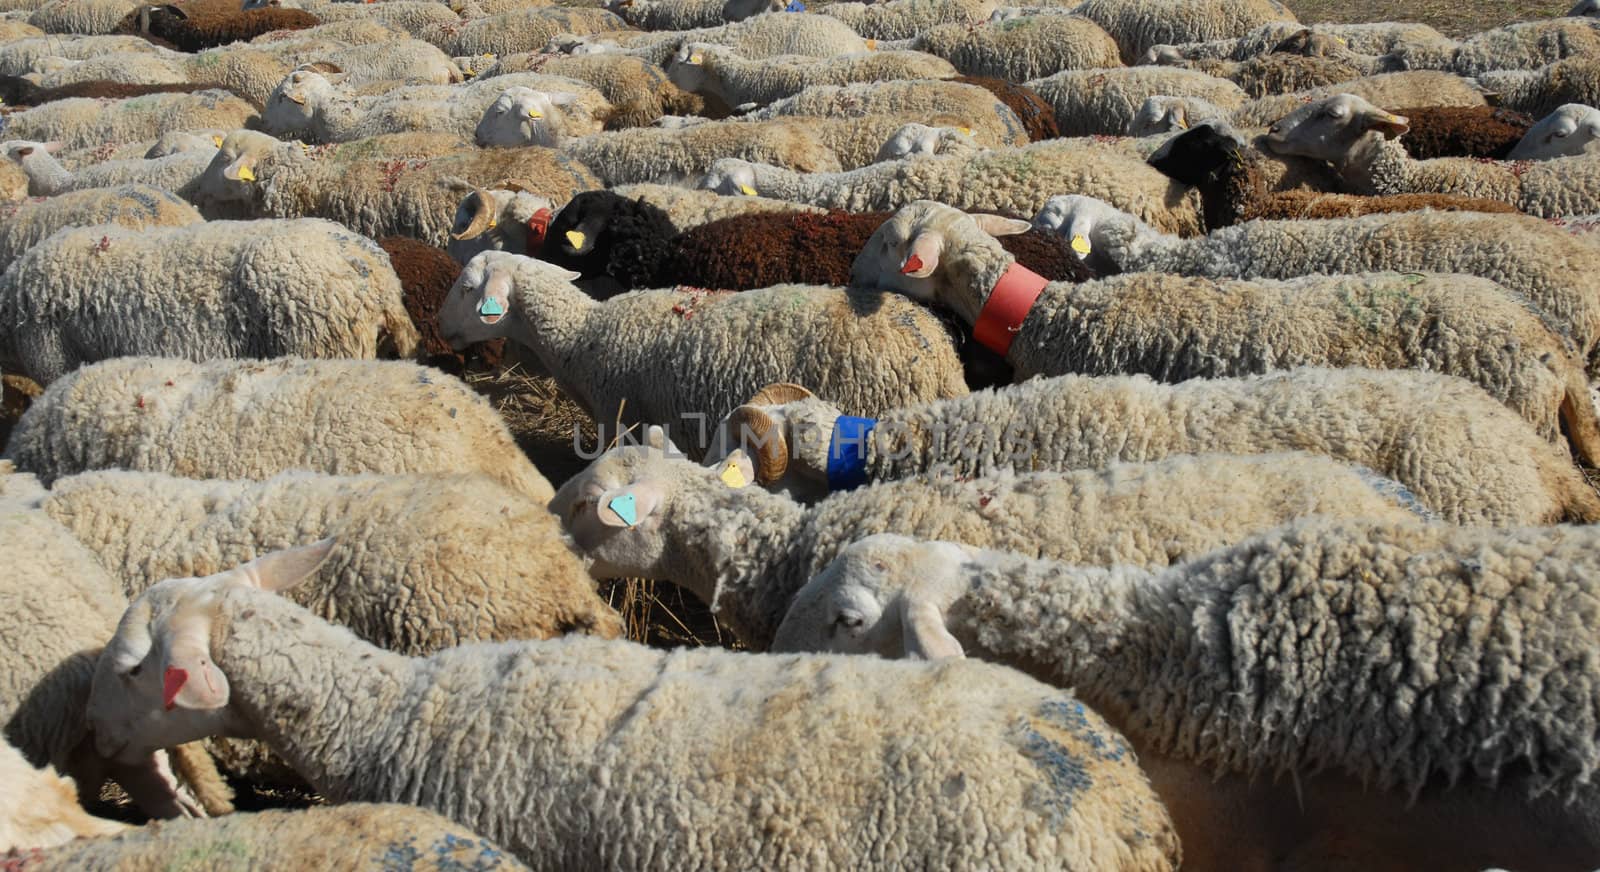 a herd of sheeps walking in a field